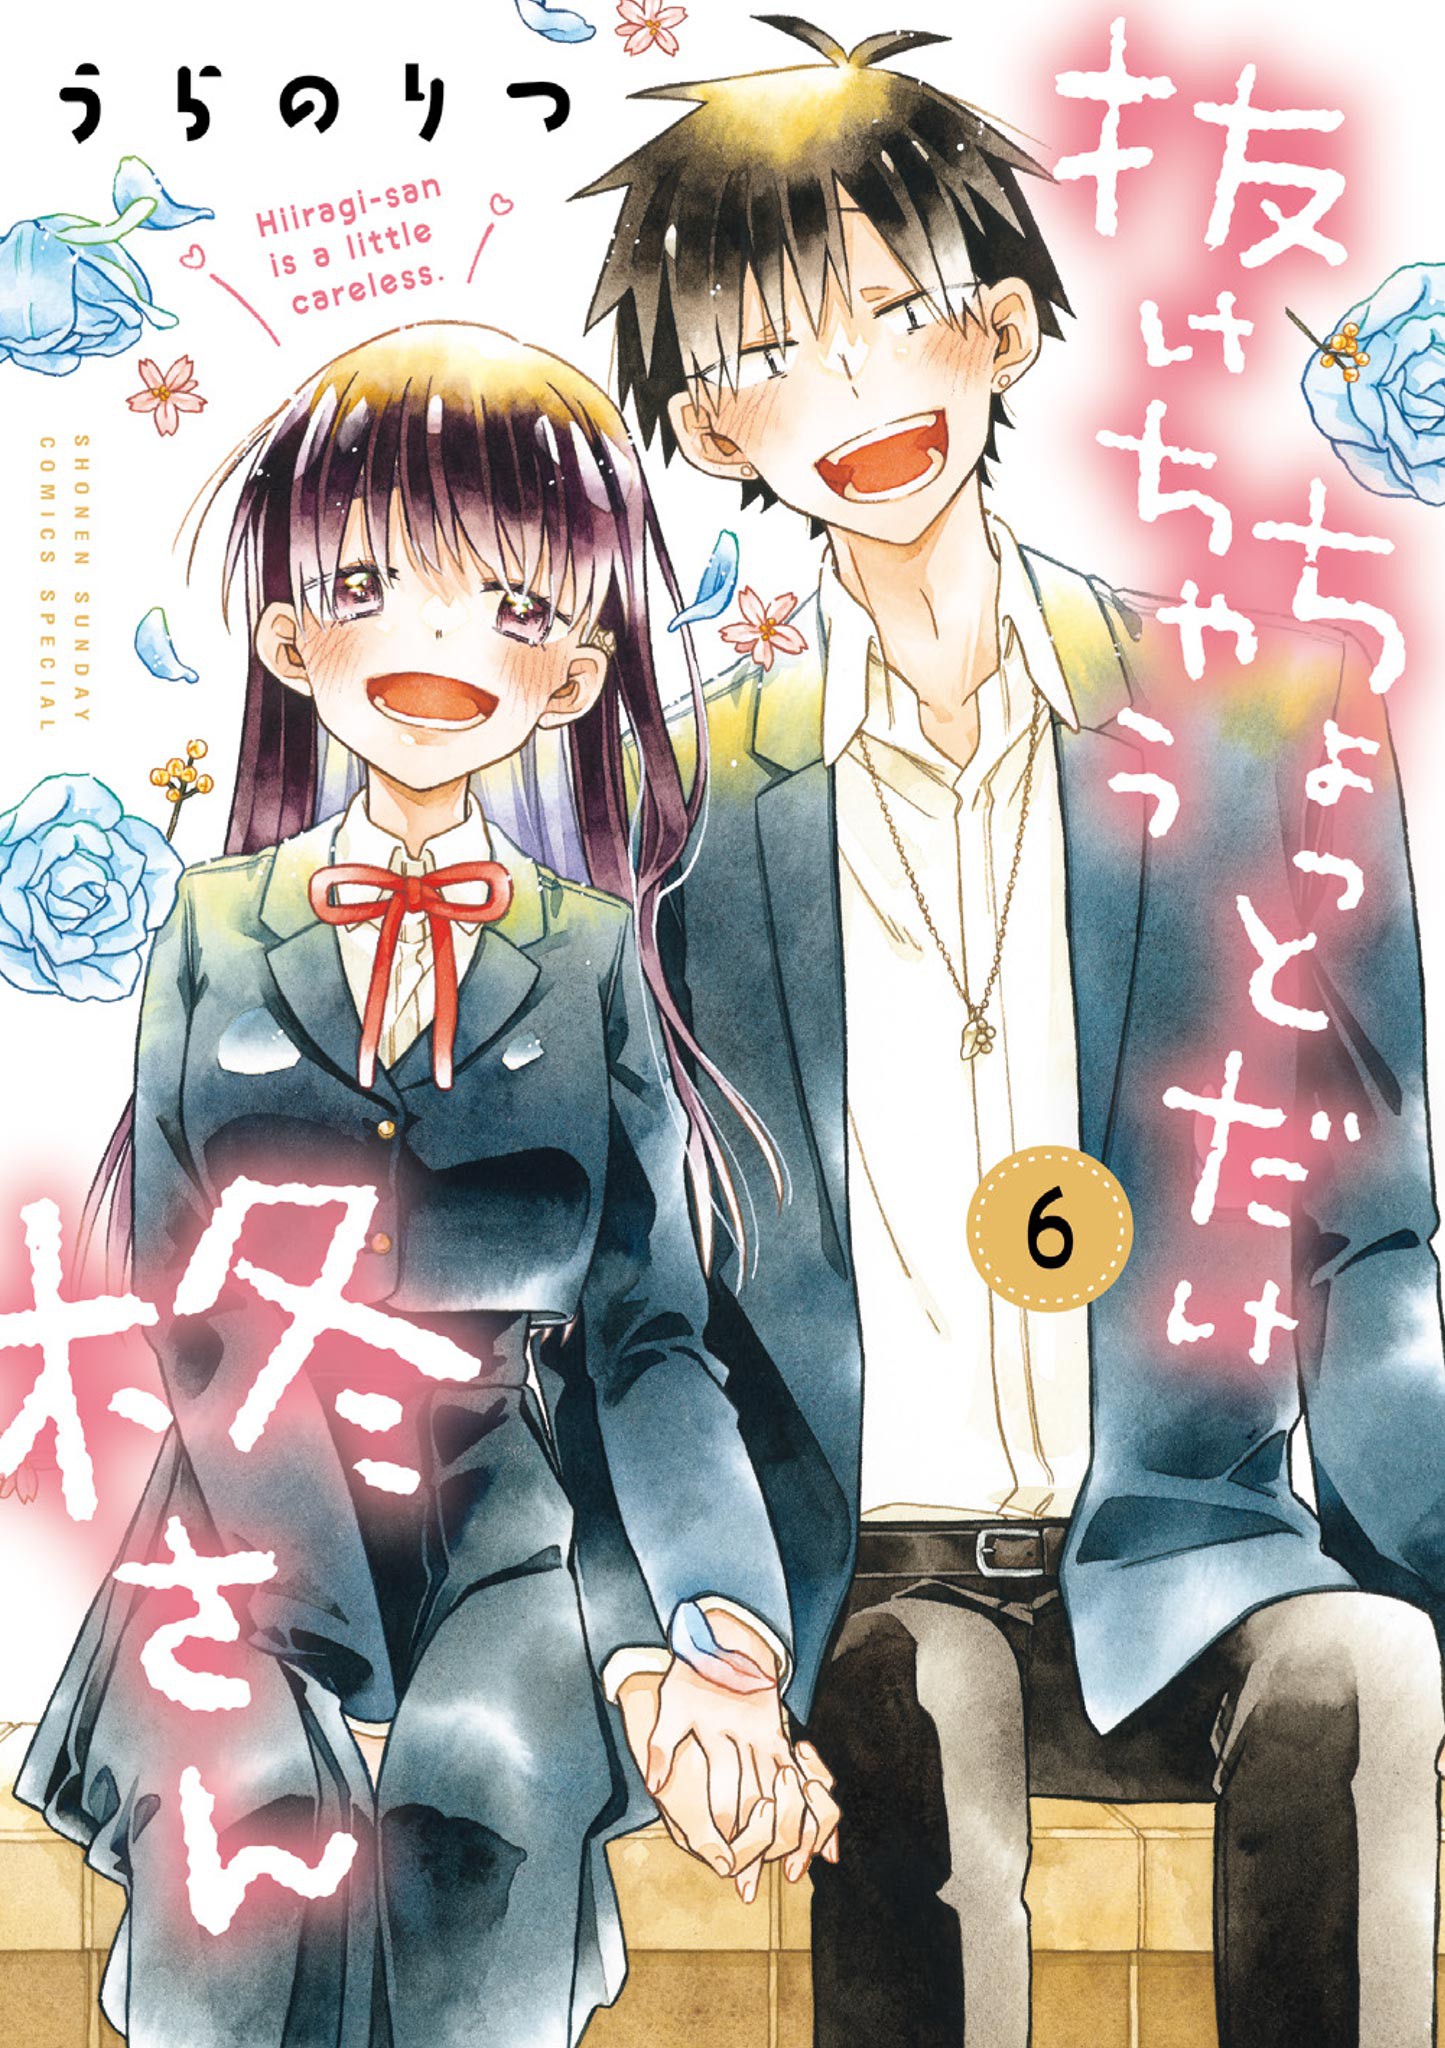 DISC] Haitatsu-saki Nounee-san ga Kowa Sugiru Hanashi - Ch. 1 : r/manga